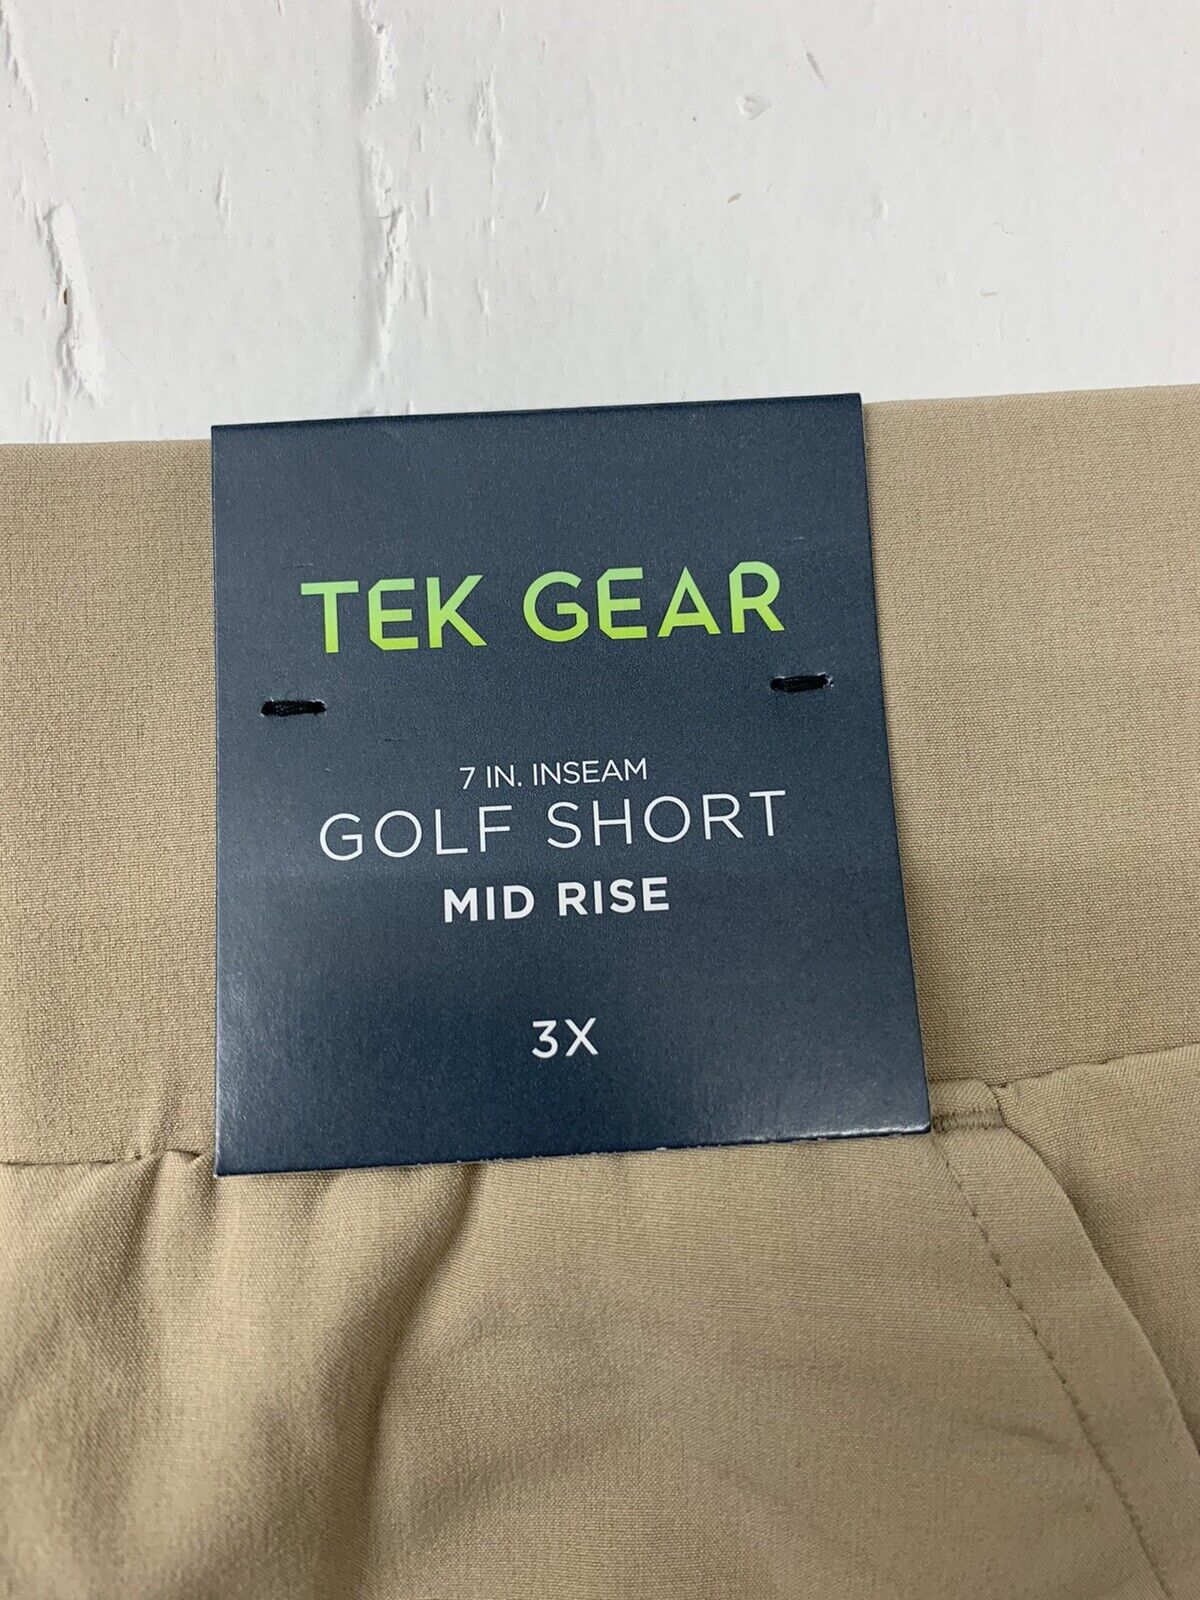 Tek Gear Womens Tan Golf Mid Rise Shorts Size 3X - beyond exchange